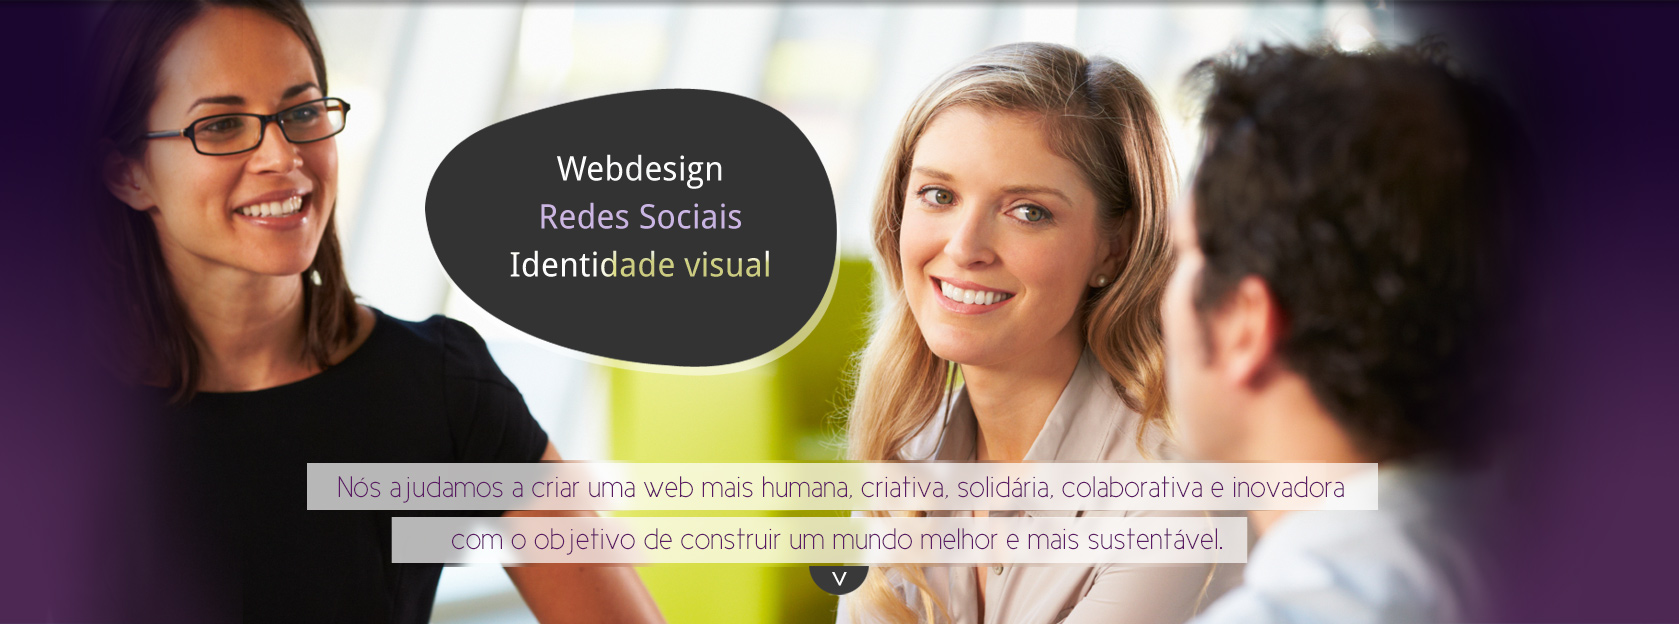 E-Hipermidia Webdesign, Redes Sociais, Identidade Visual - Nós ajudamos a criar uma web mais humana, solidária e colaborativa. 
   